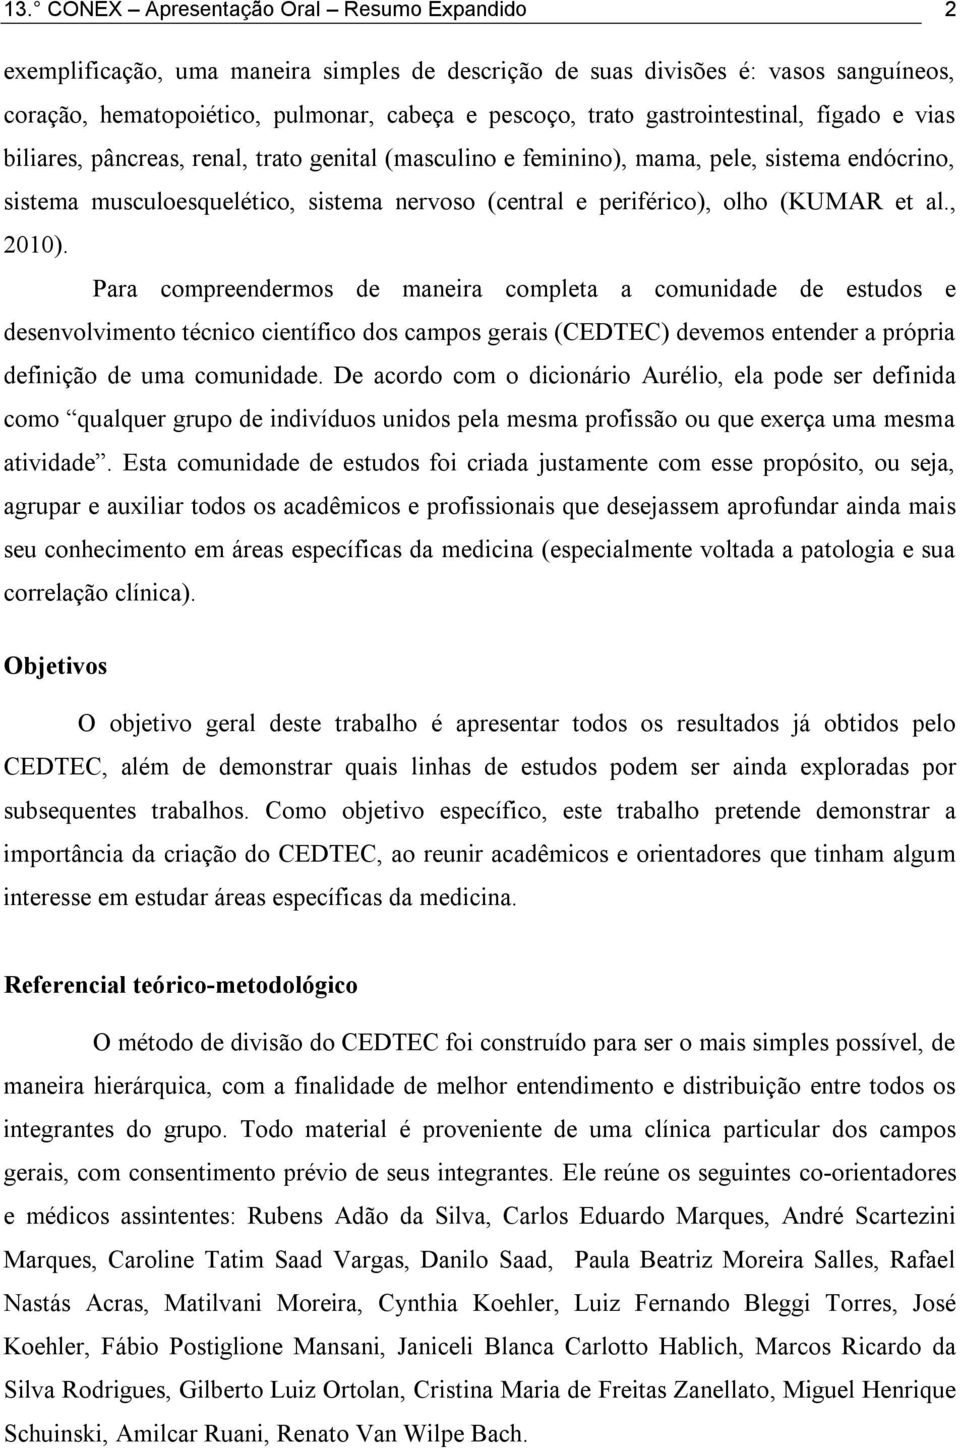 olho (KUMAR et al., 2010).